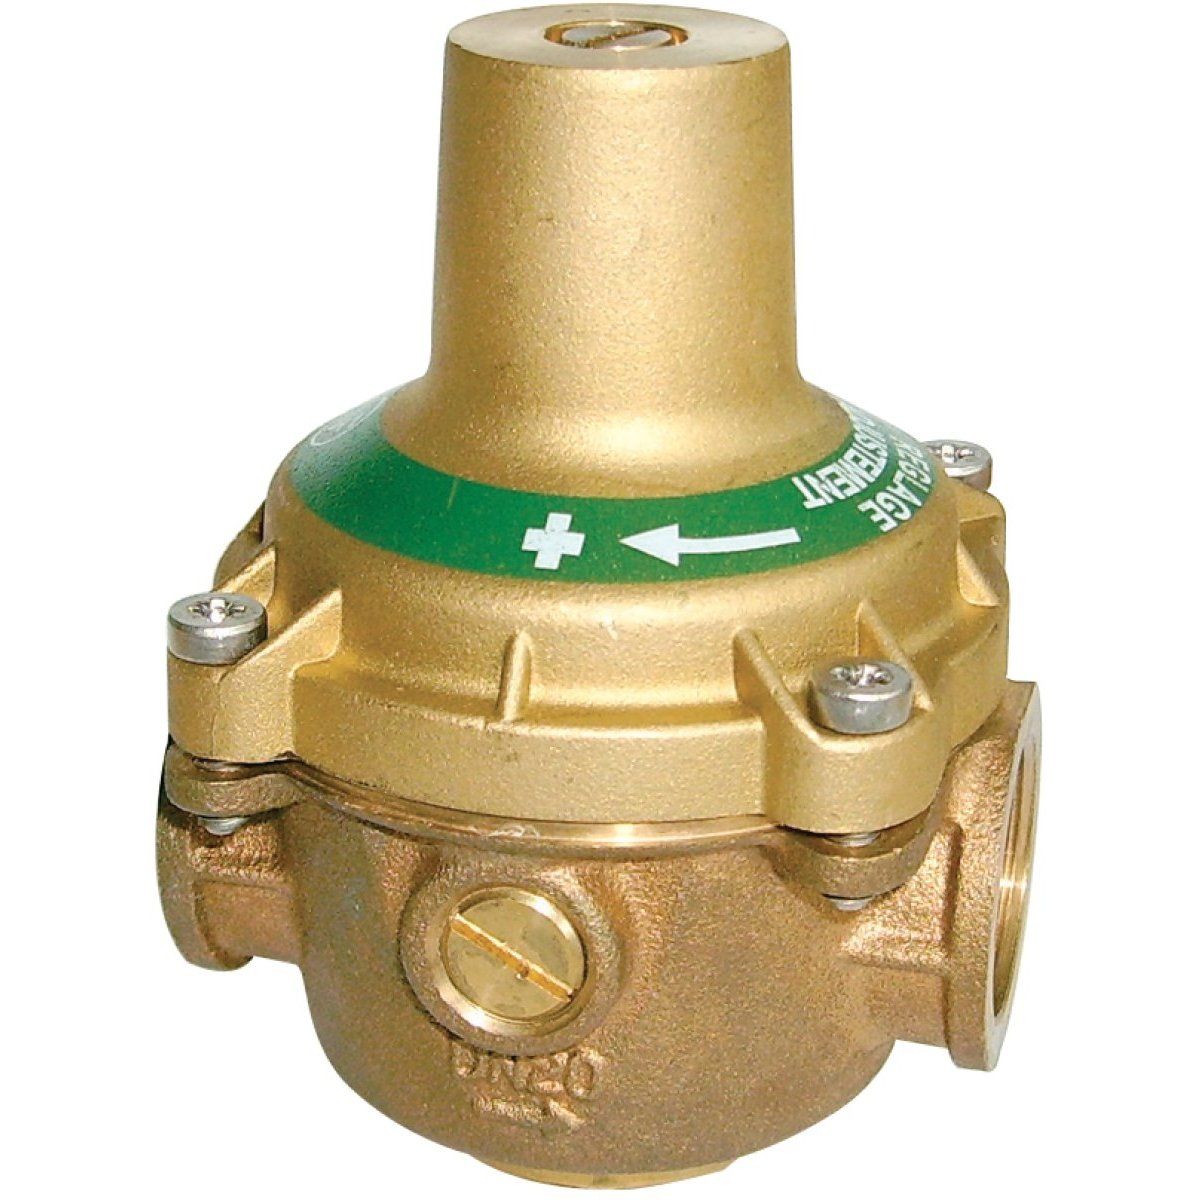 Manomètre pour la mesure de pression  Compresseur ou canalisation - EM  Distribution